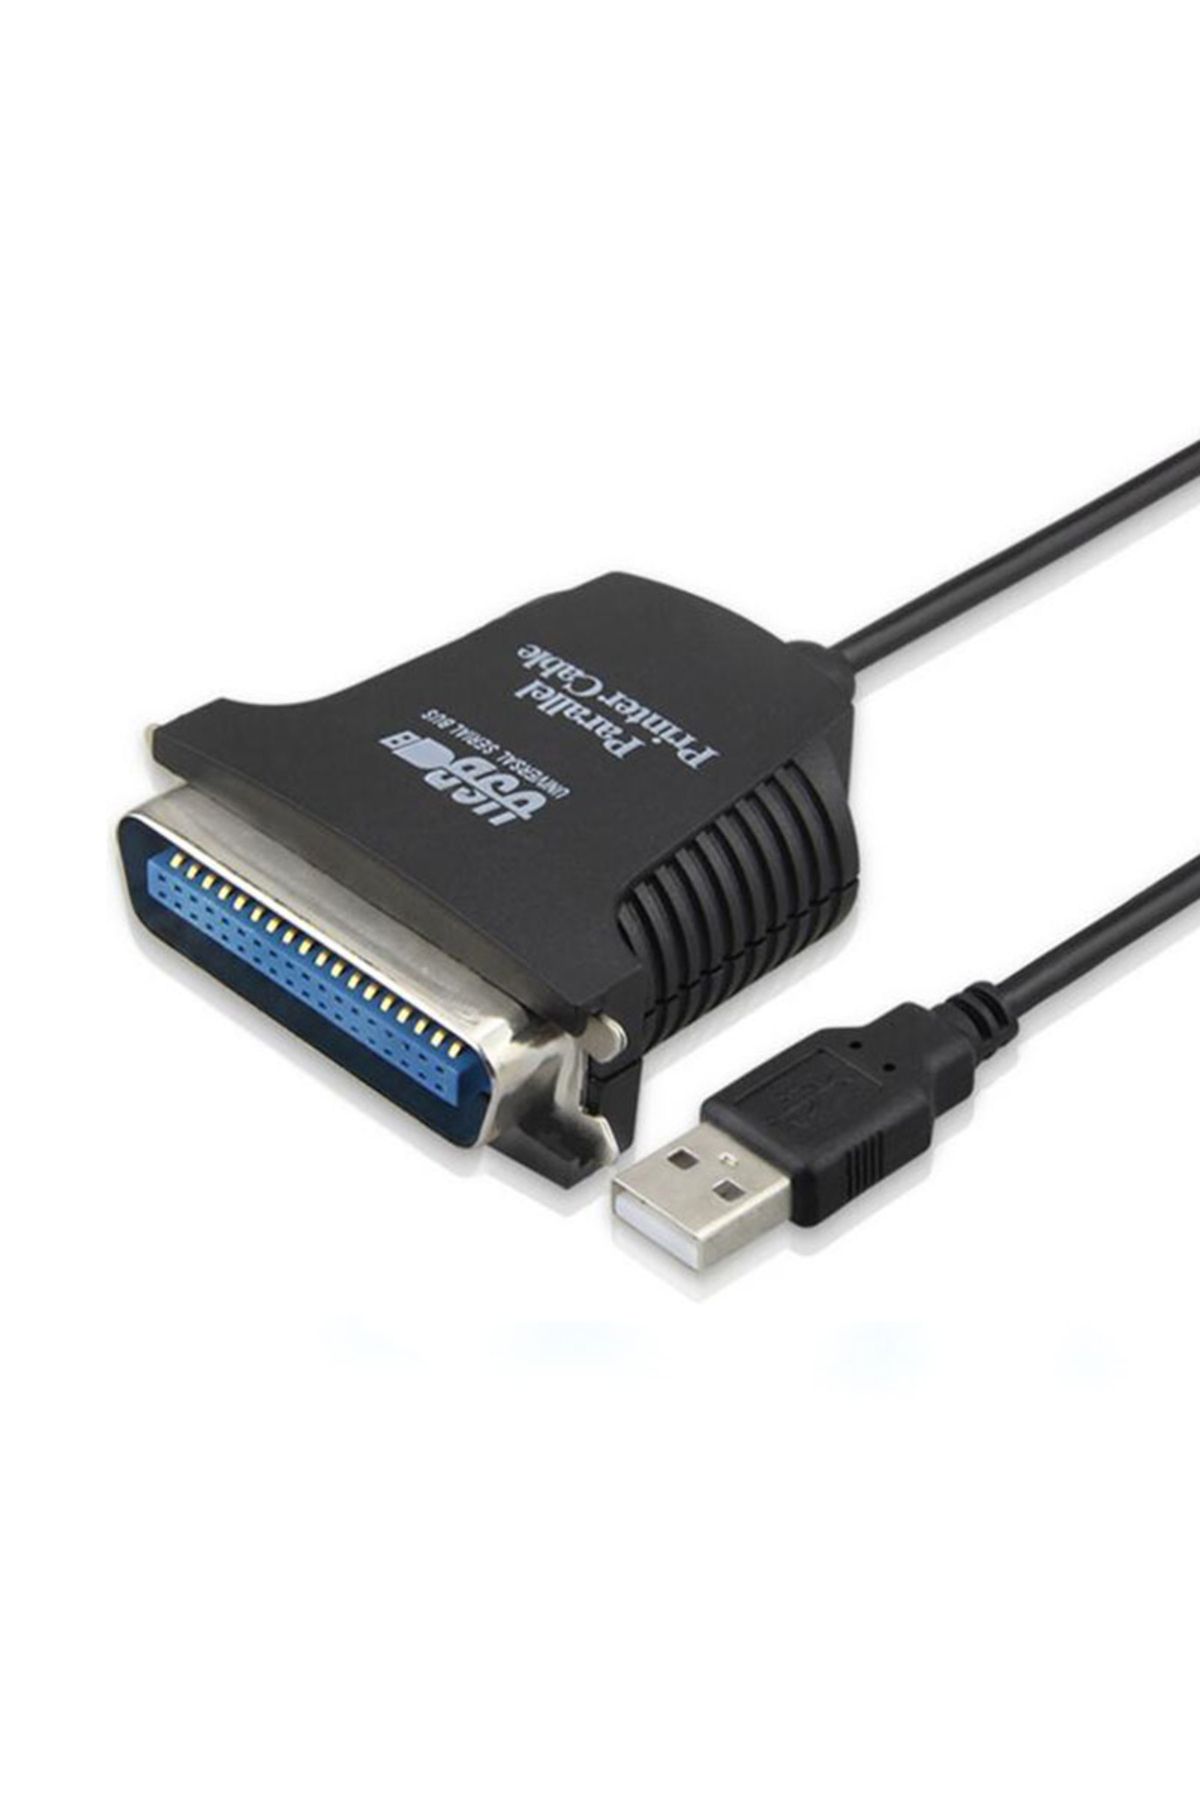 Powermaster PM-6492 USB 2.0 TO 1284 PRINTER KABLO 1.5 METRE (USB-LPT)